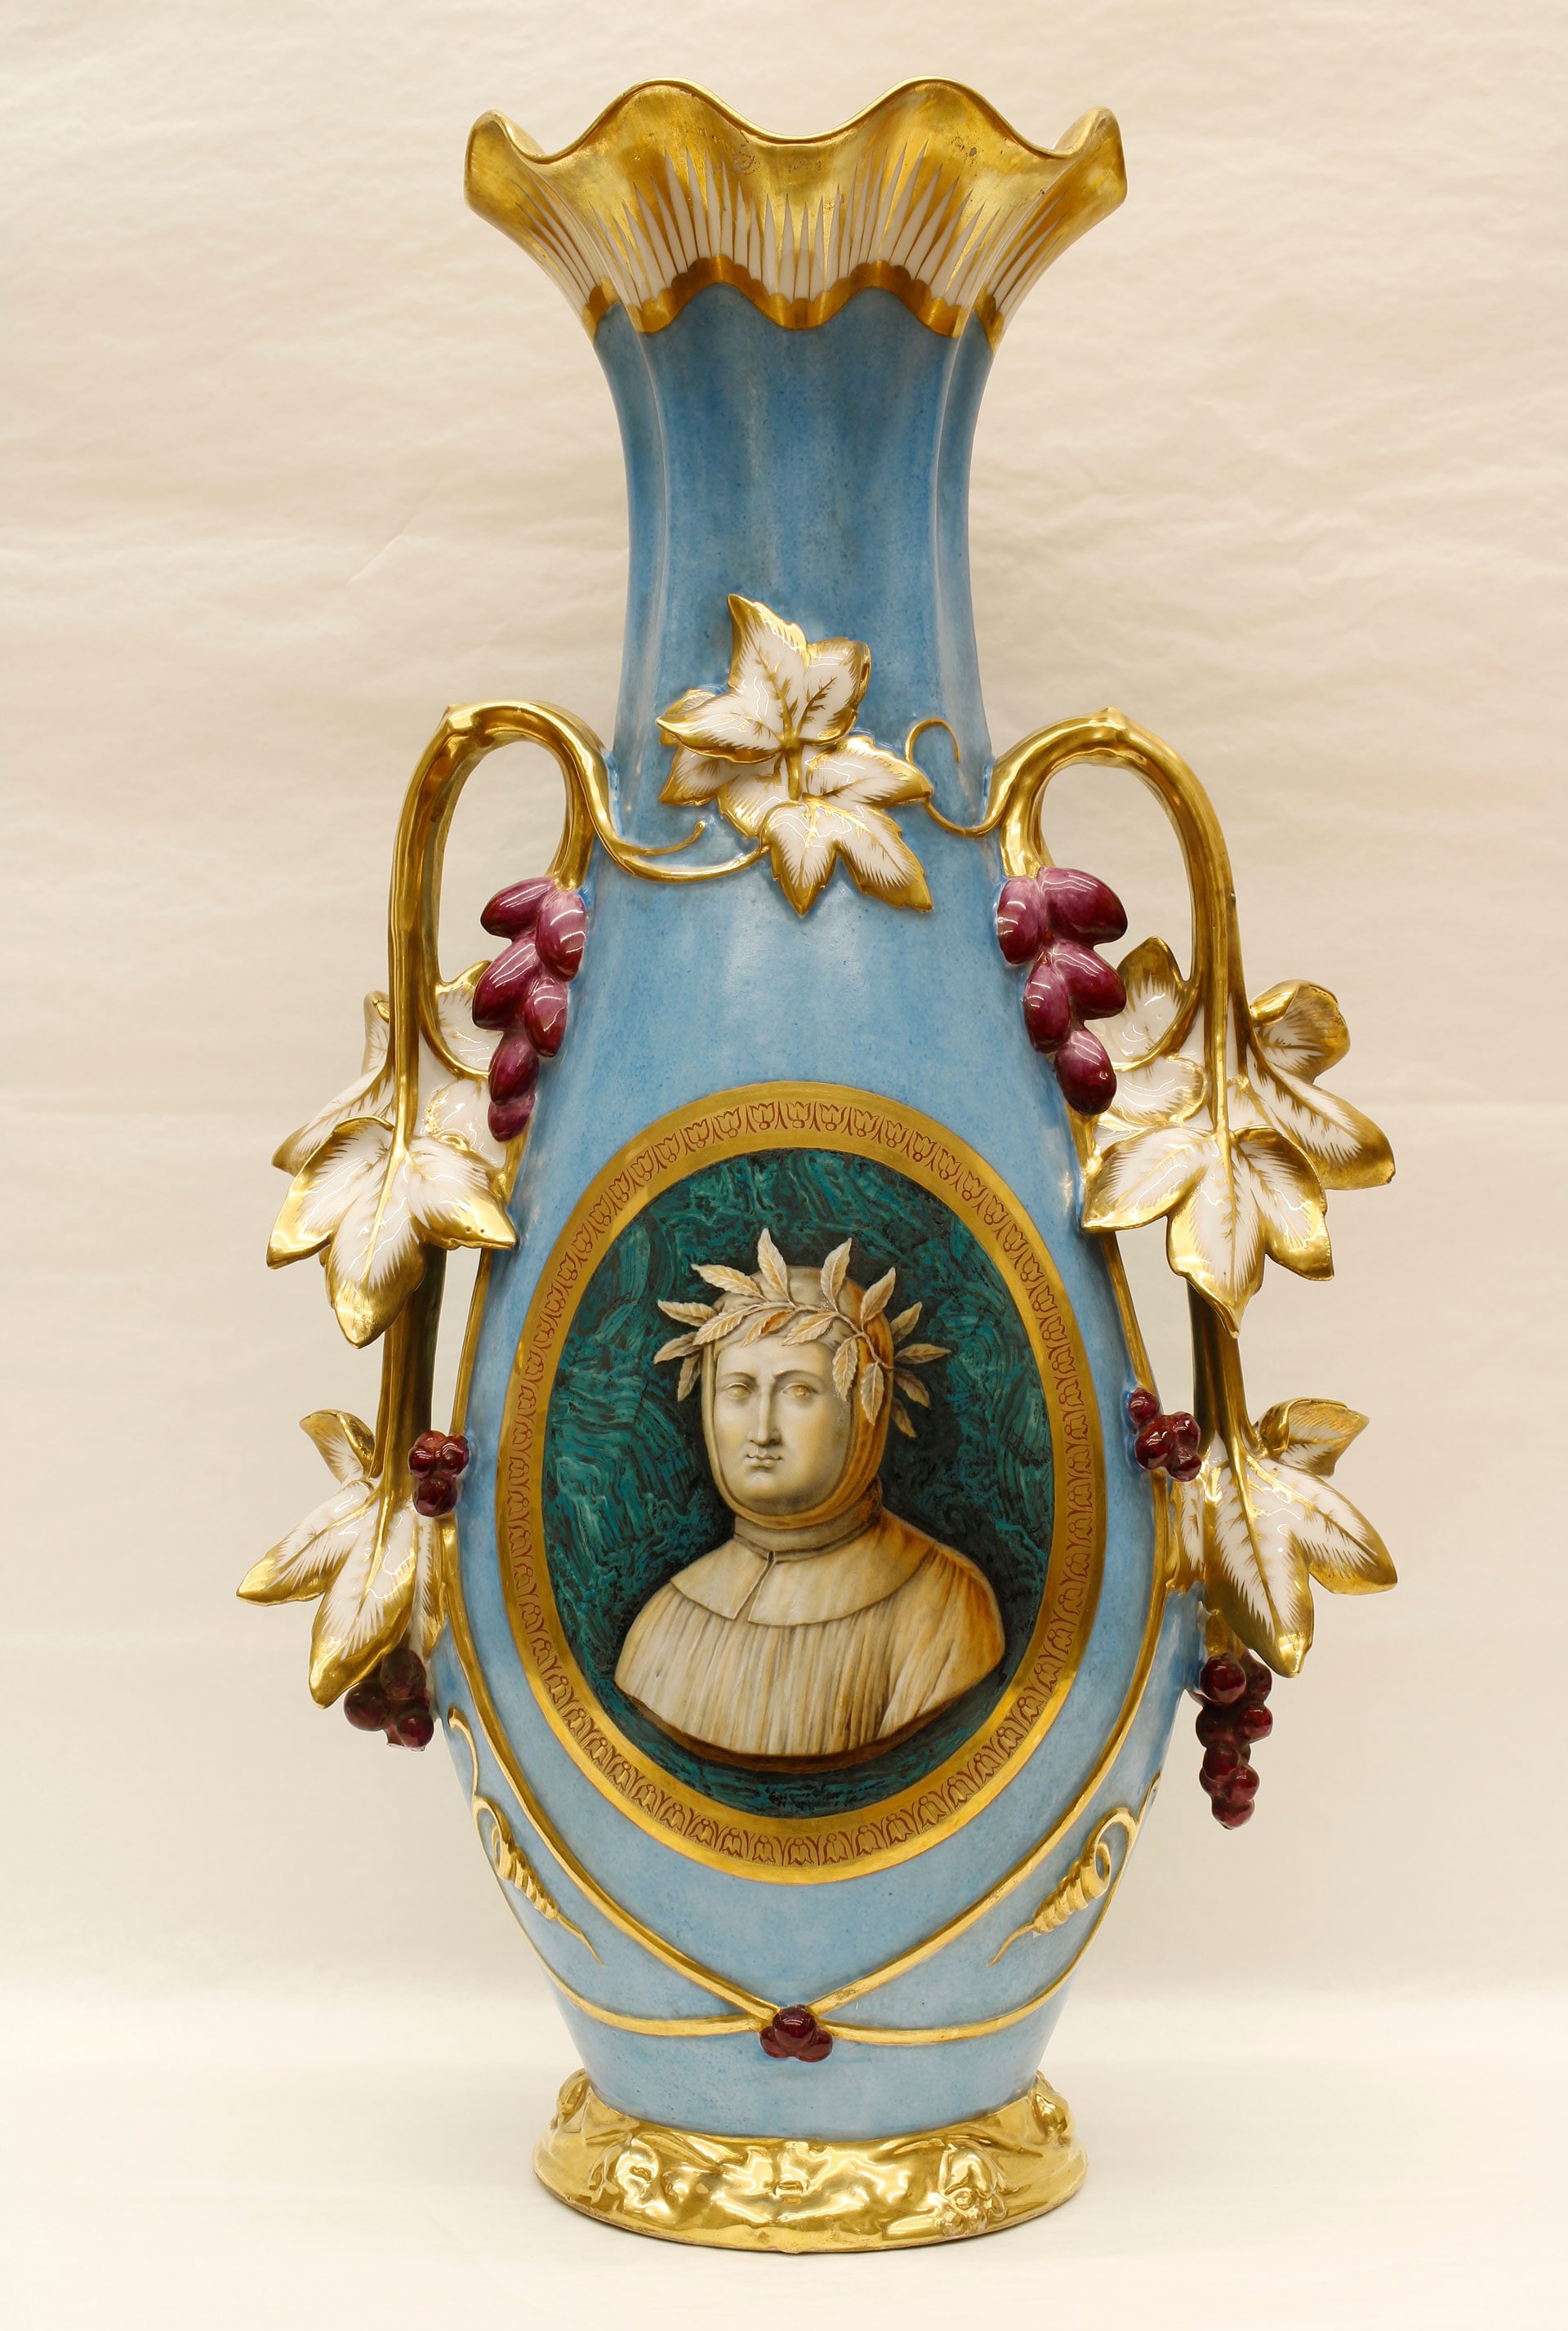 Manifattura francese, seconda metà del XIX secolo. Vaso di porcellana con ritratto Francesco Petrarca.Palazzo Reale di Napoli